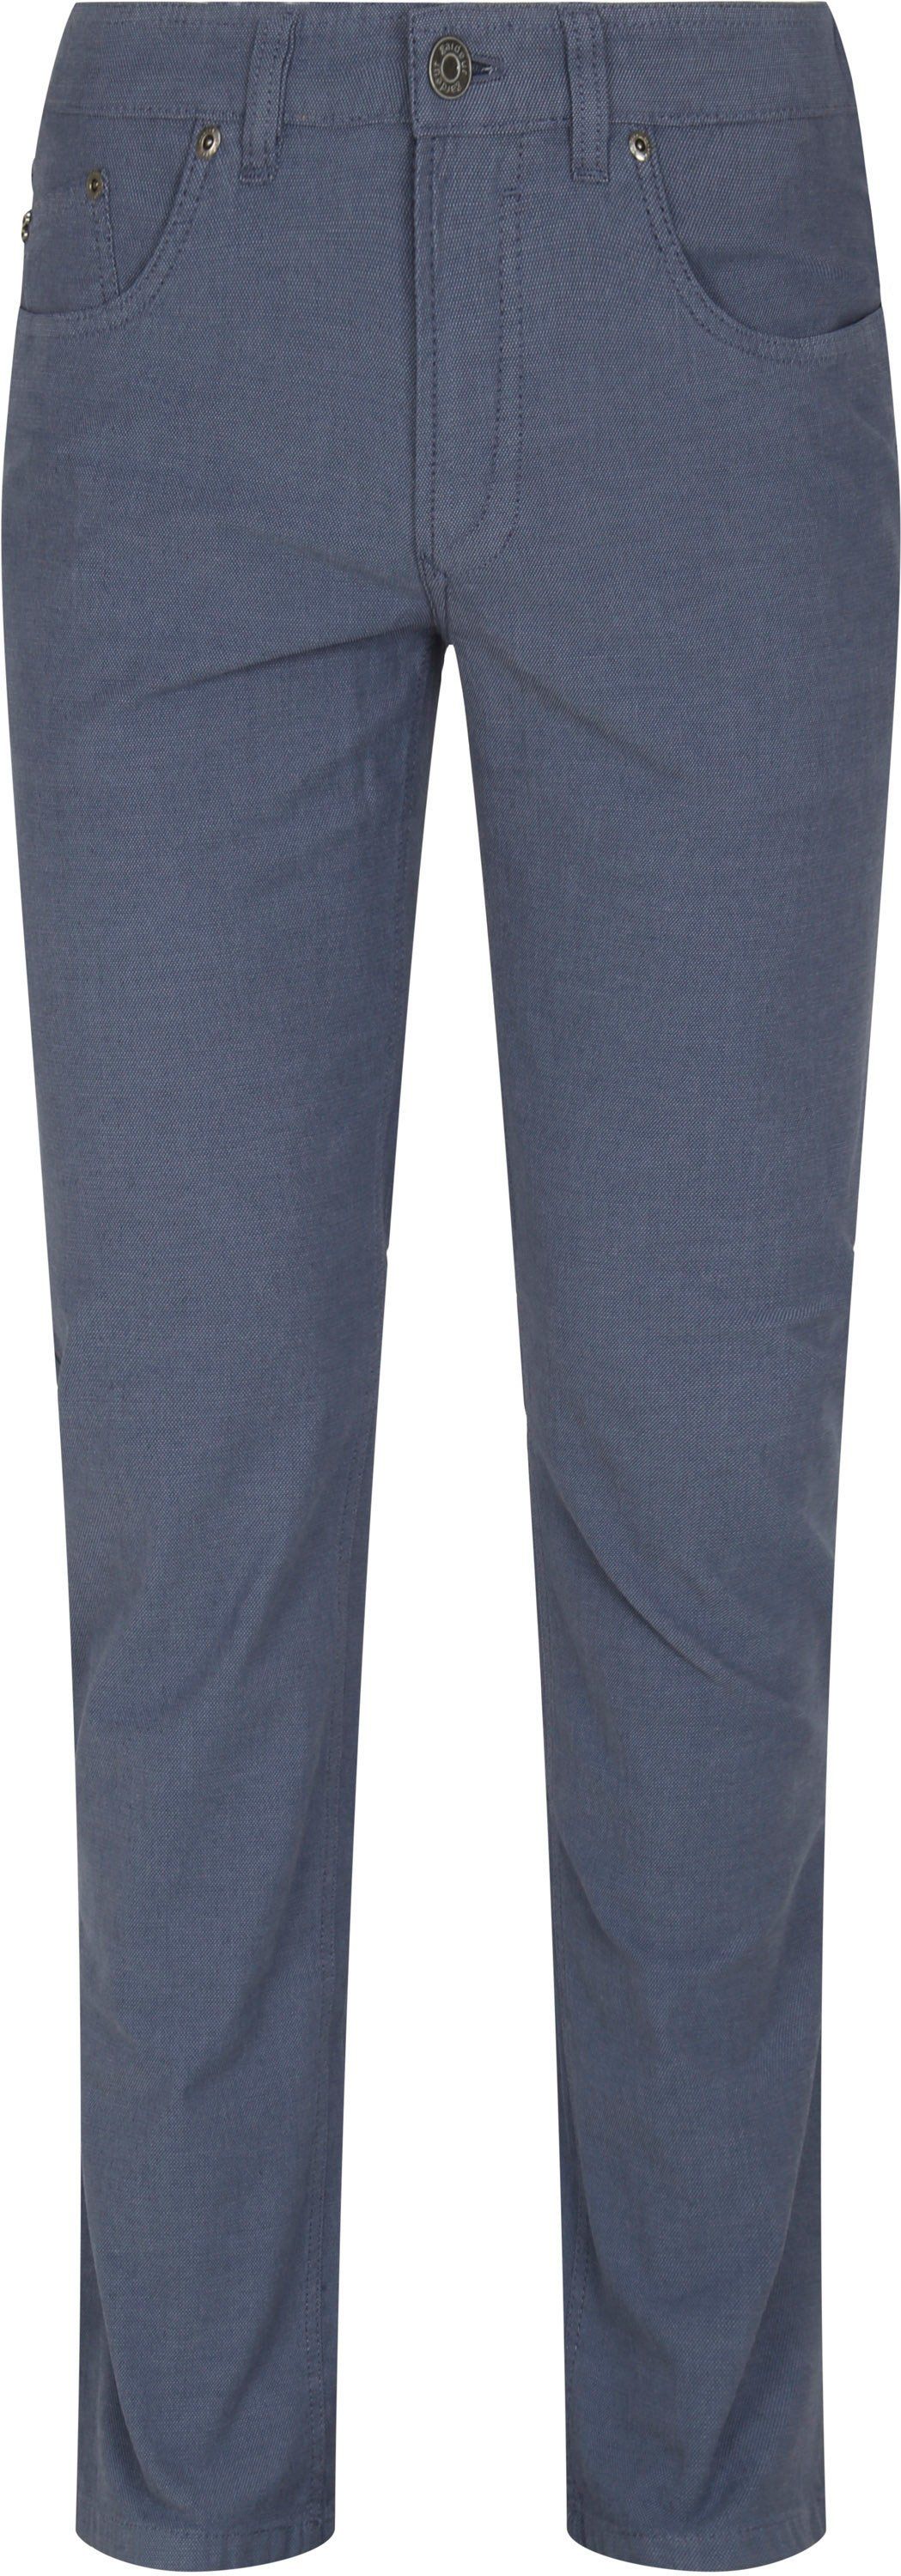 Gardeur Bill Trousers Five Pocket Modern Fit Blue size W 32